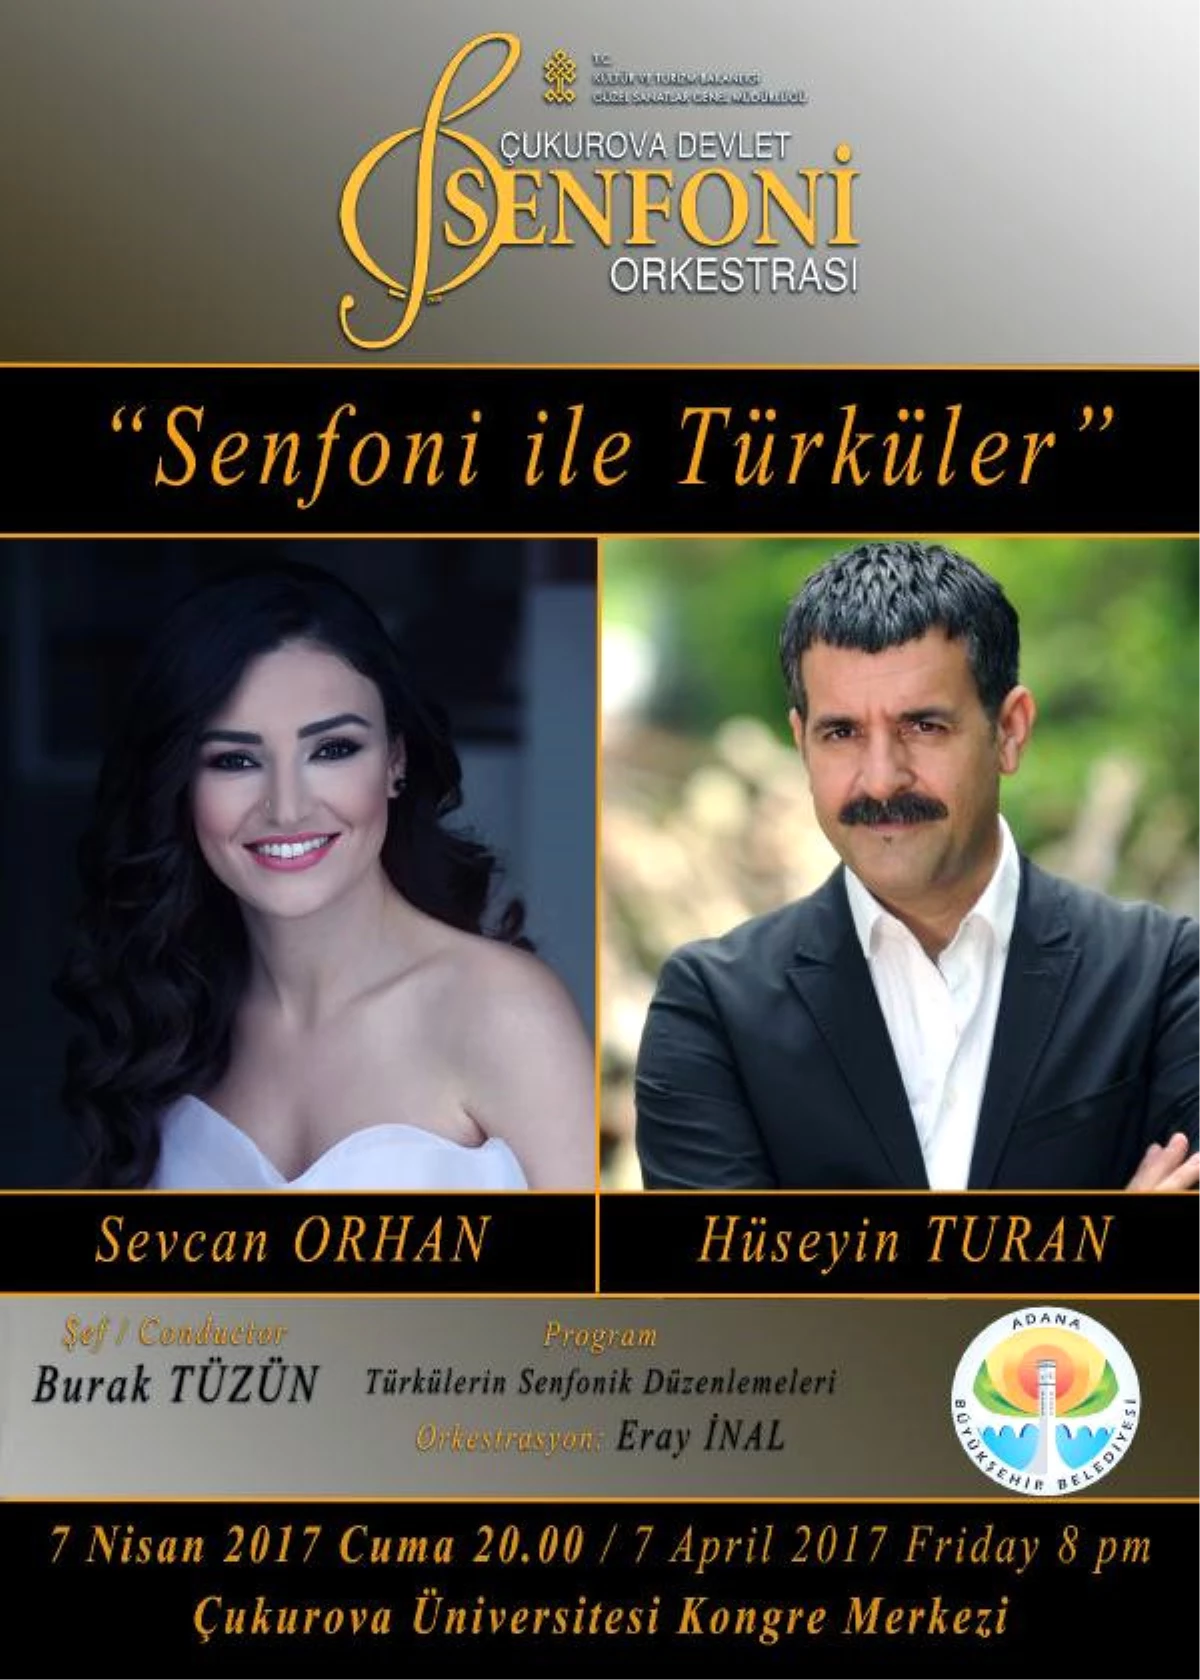 Senfonik Türküler Seslendirilecek